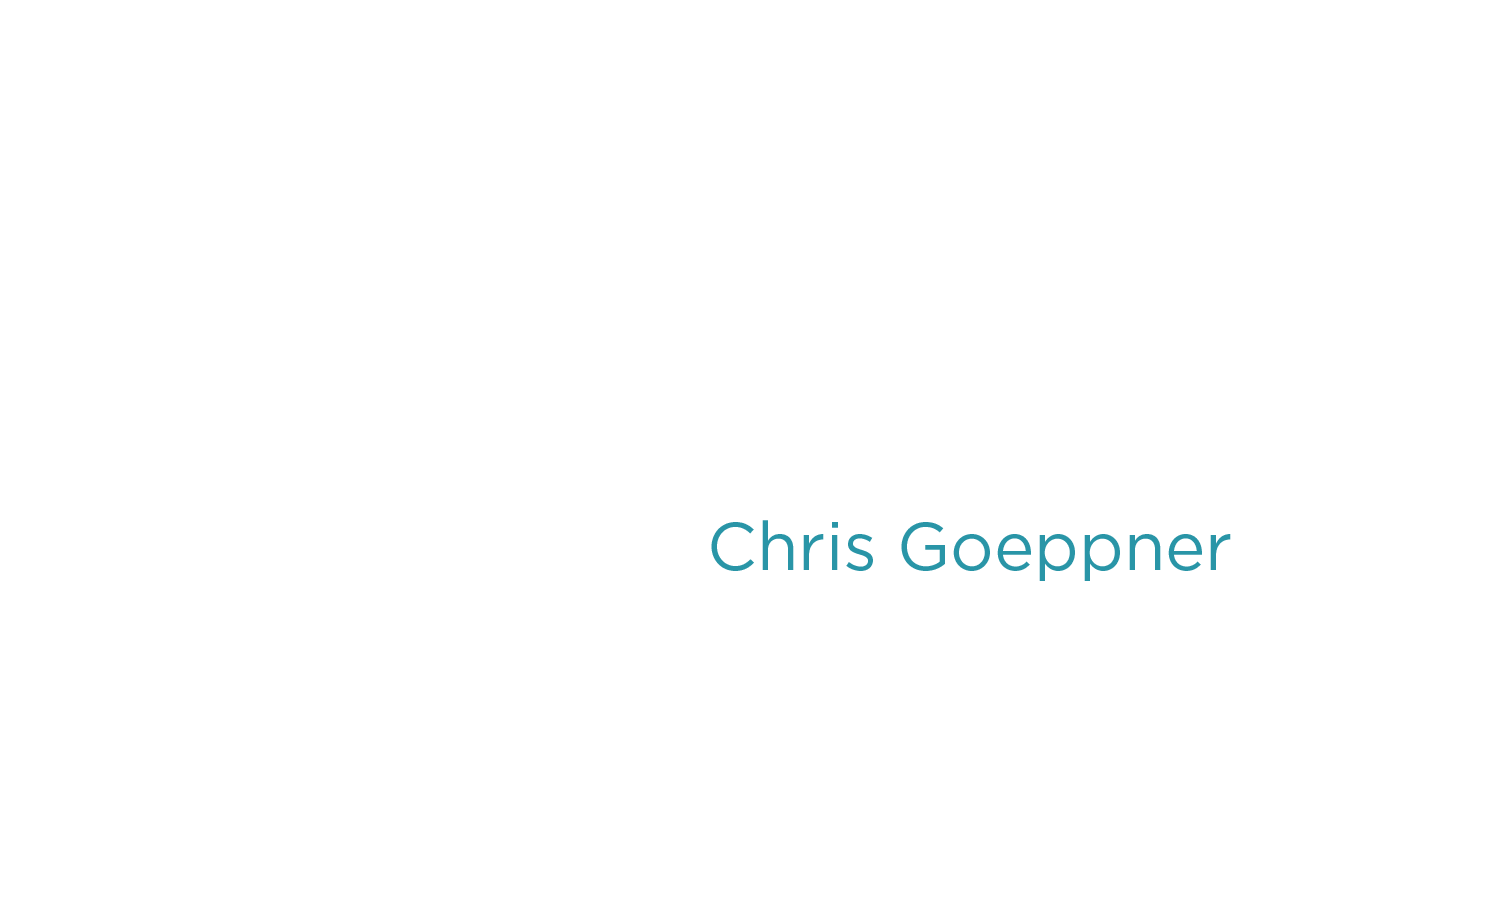 Chris Goeppner - Chris Goeppner